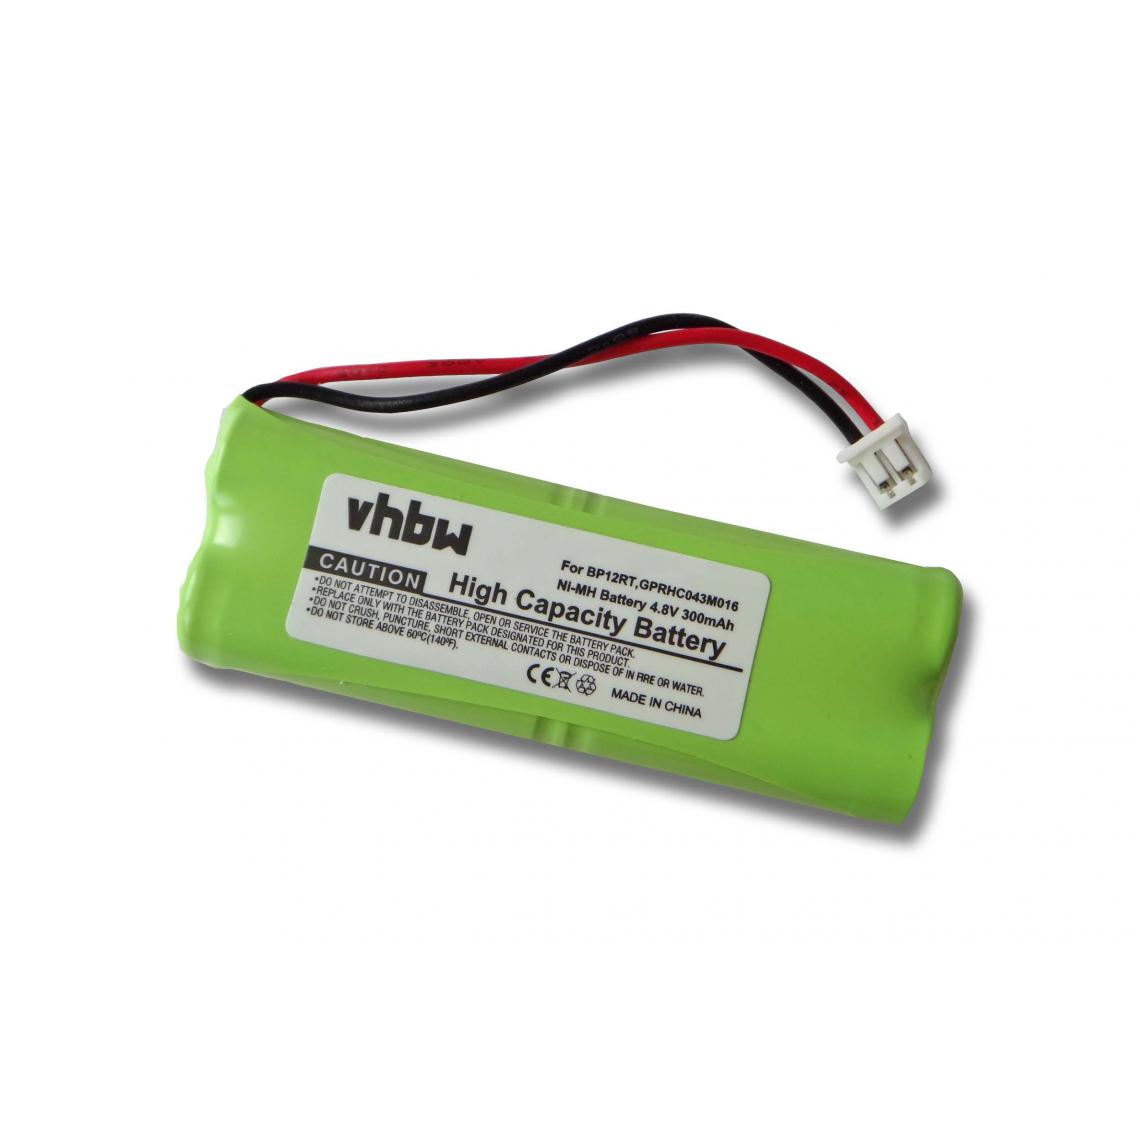 Vhbw - vhbw batterie compatible avec Dogtra 1700 Receiver, 175NCP Transmitter, 1800 Receiver collier de dressage (300mAh, 4,8V, NiMH) - Collier pour chien